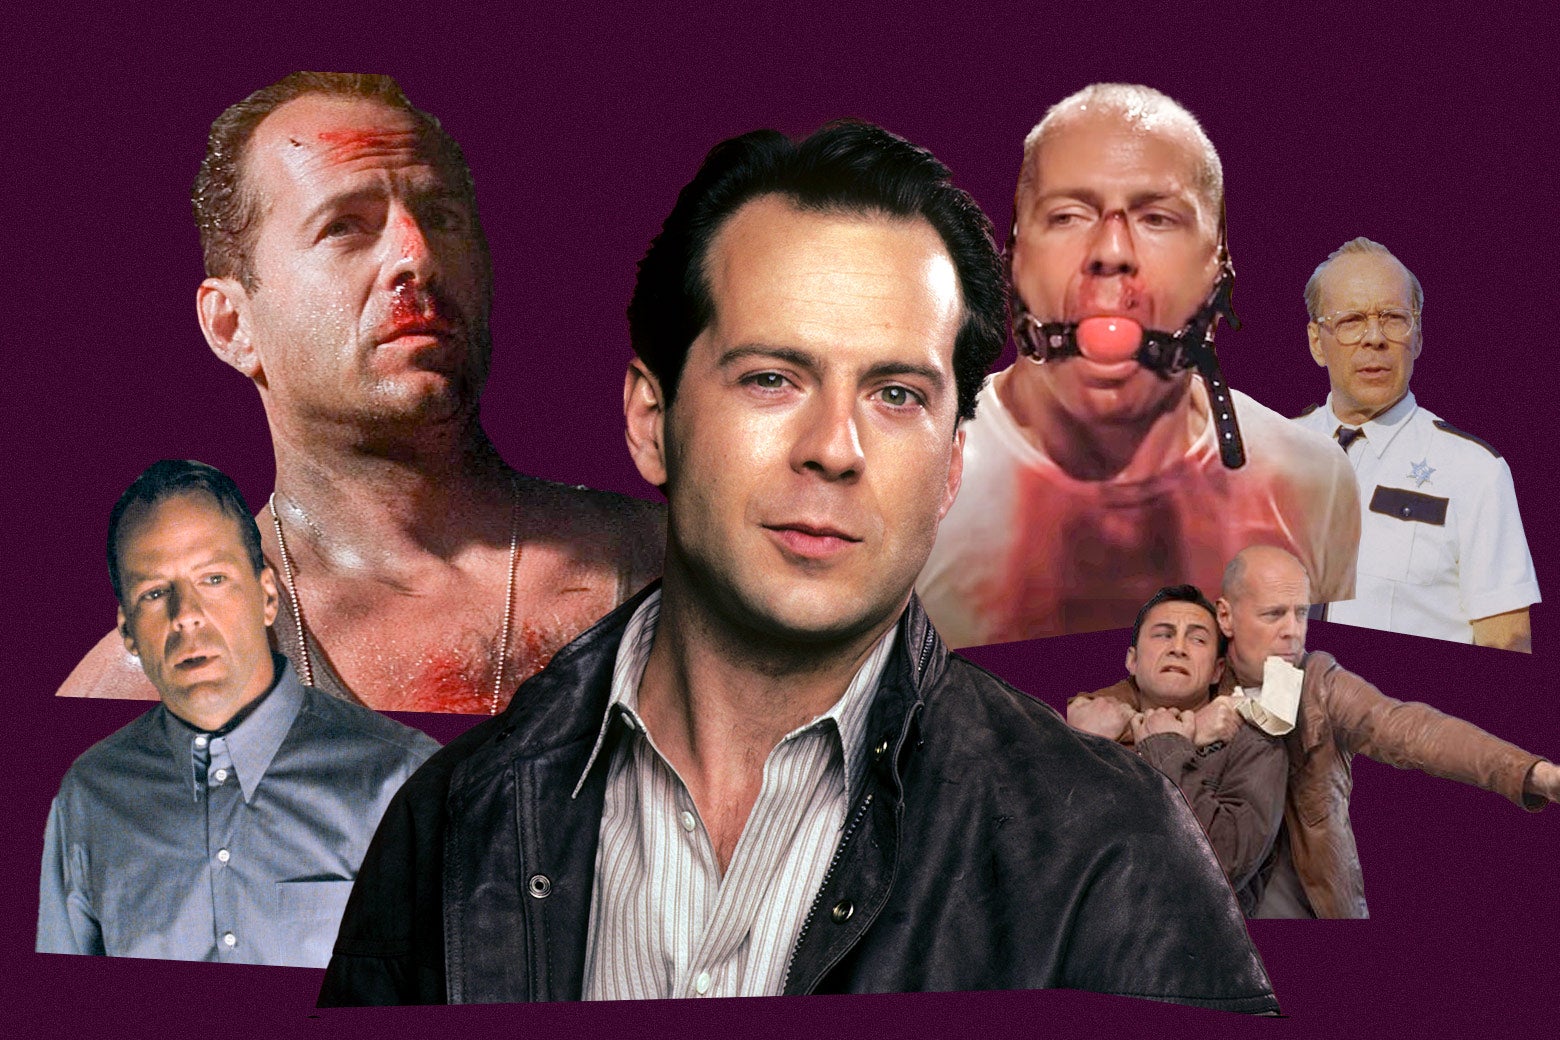 Bruce Willis in Moonlighting, Sixth Sense, Die Hard, Pulp Fiction, Moonrise Kingdom, and Looper.